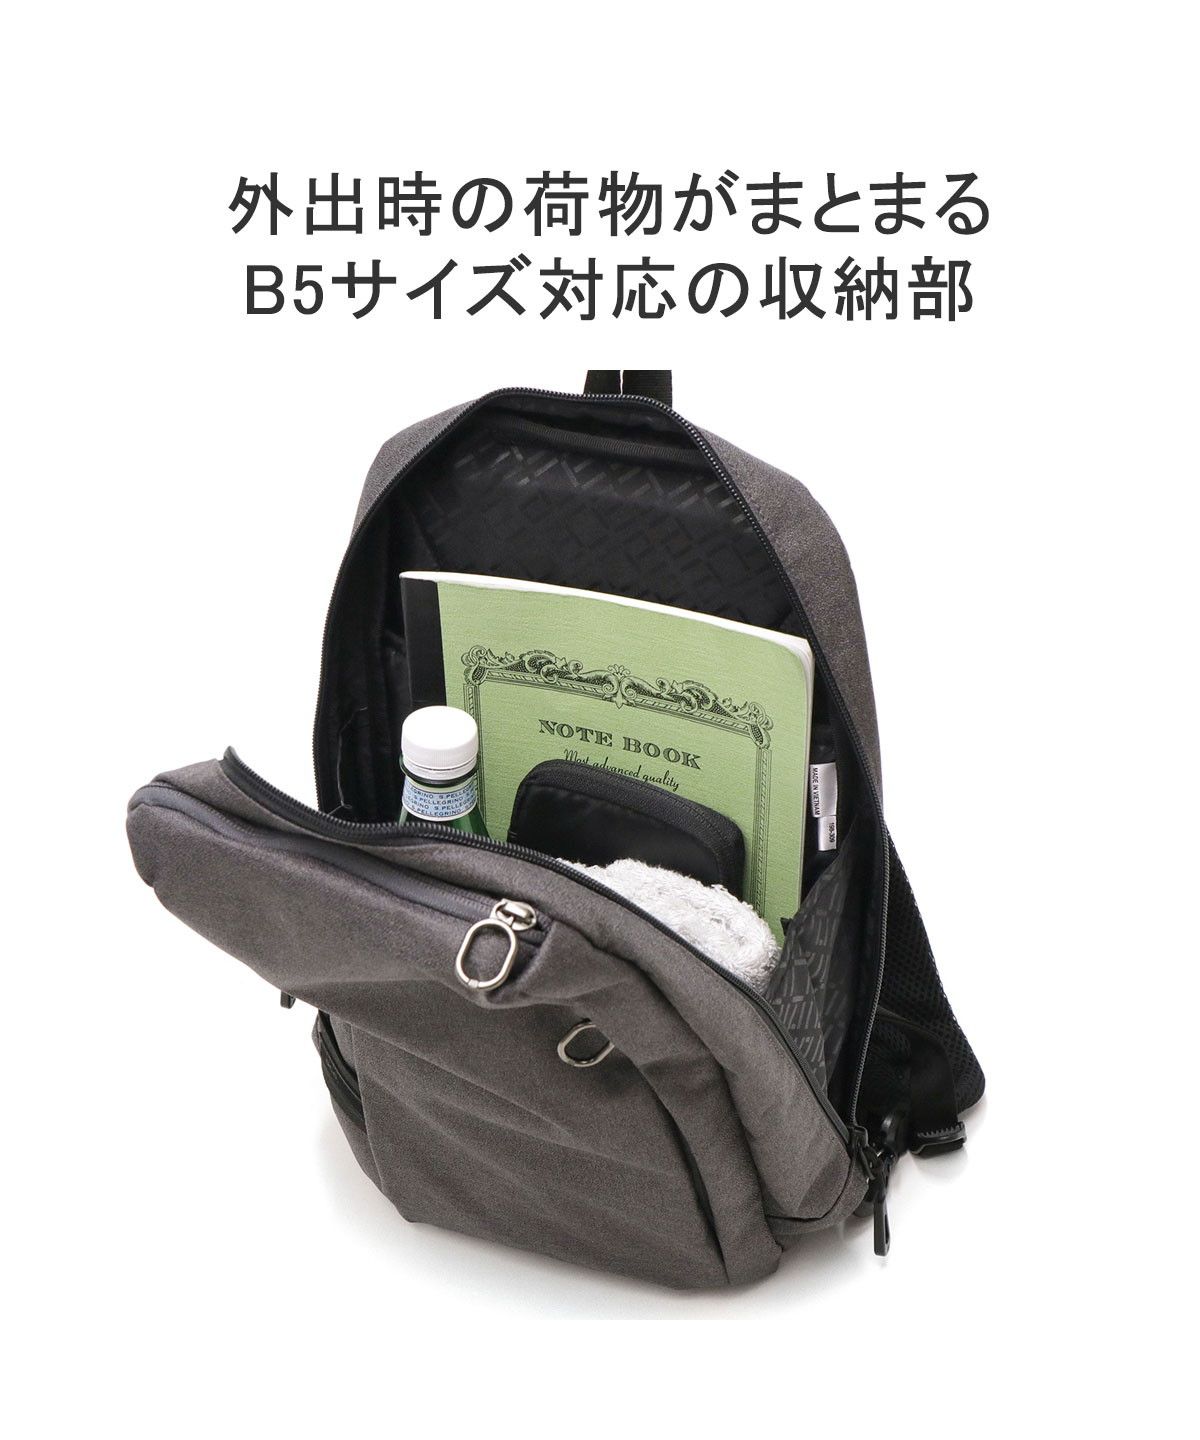 【日本正規品】 エースジーン ボディバッグ B5 縦型 ワンショルダーバッグ タブレット 10.1インチ 抗菌 撥水 軽量 軽い ホバーライト2  67618